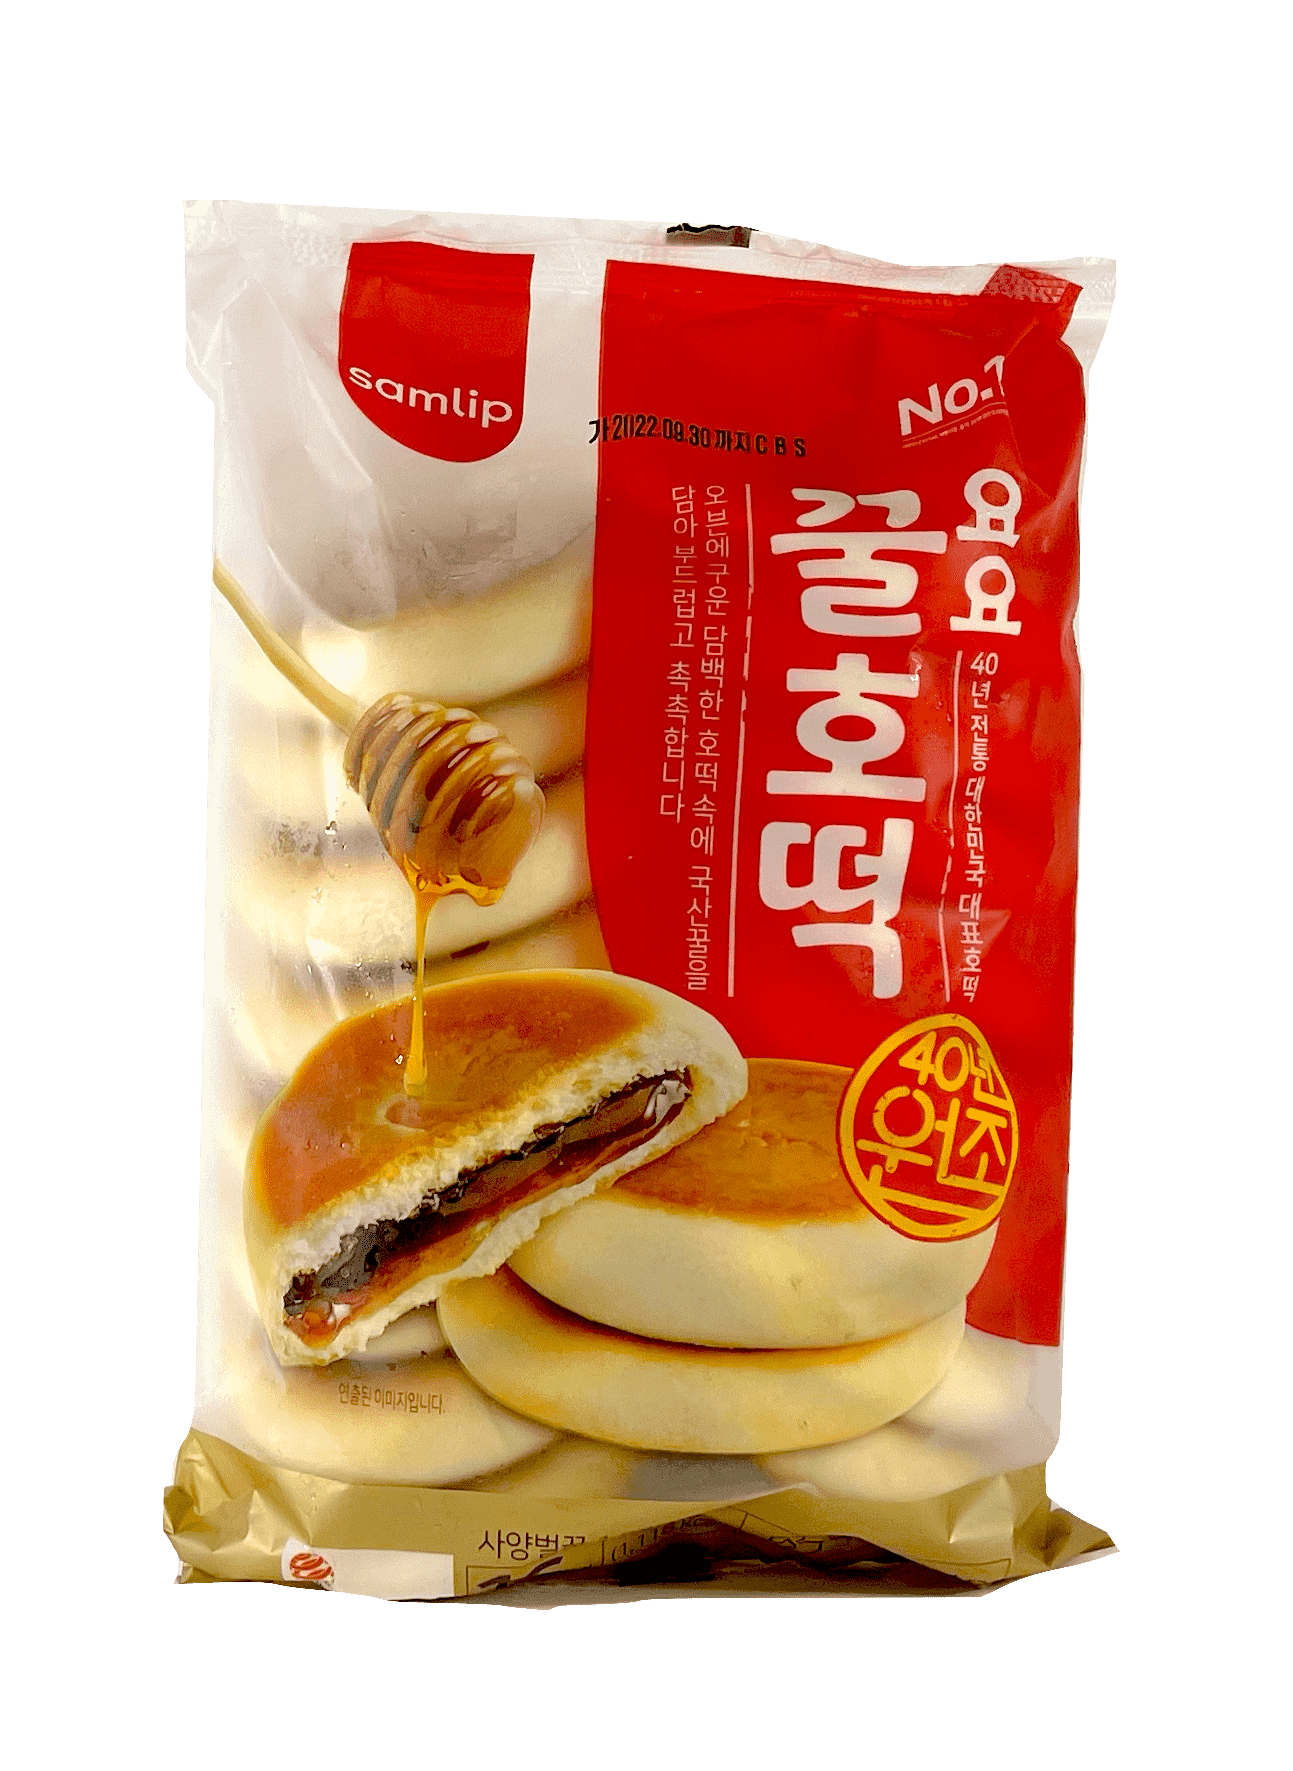 冷冻 蜂蜜夹心甜面包 400g Samlip 韩国